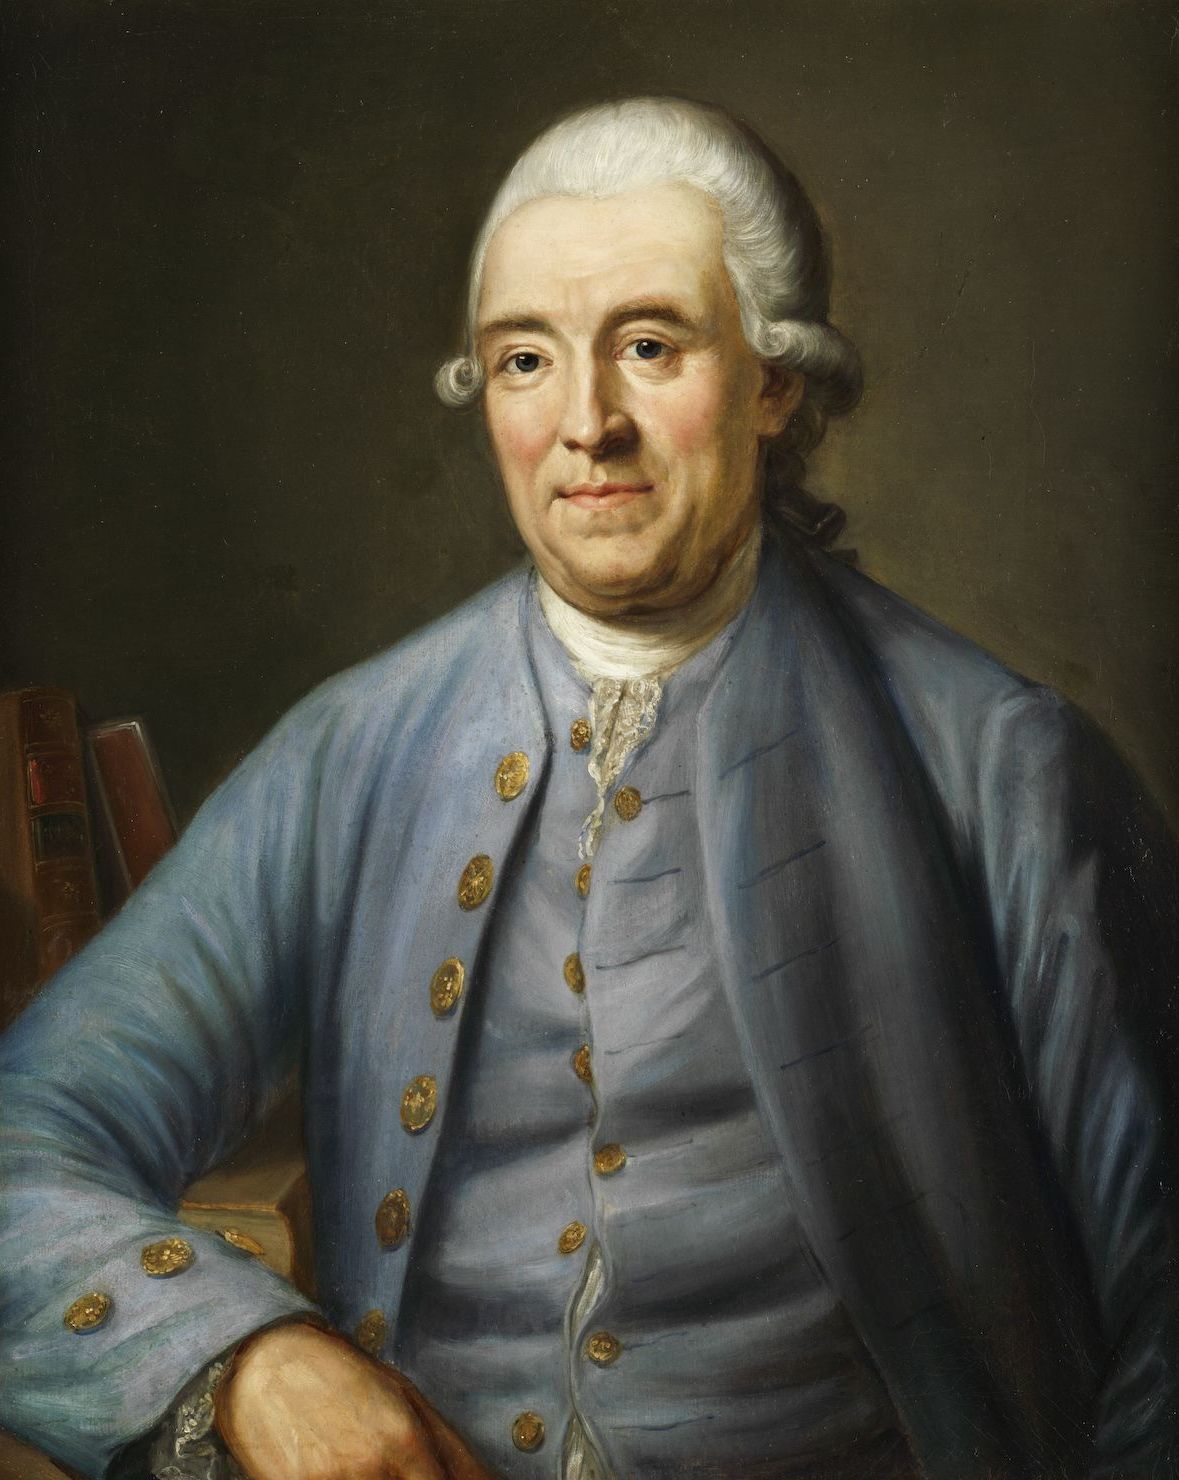 Ernst Gottlob, Justus Möser, Öl auf Leinwand, 1777